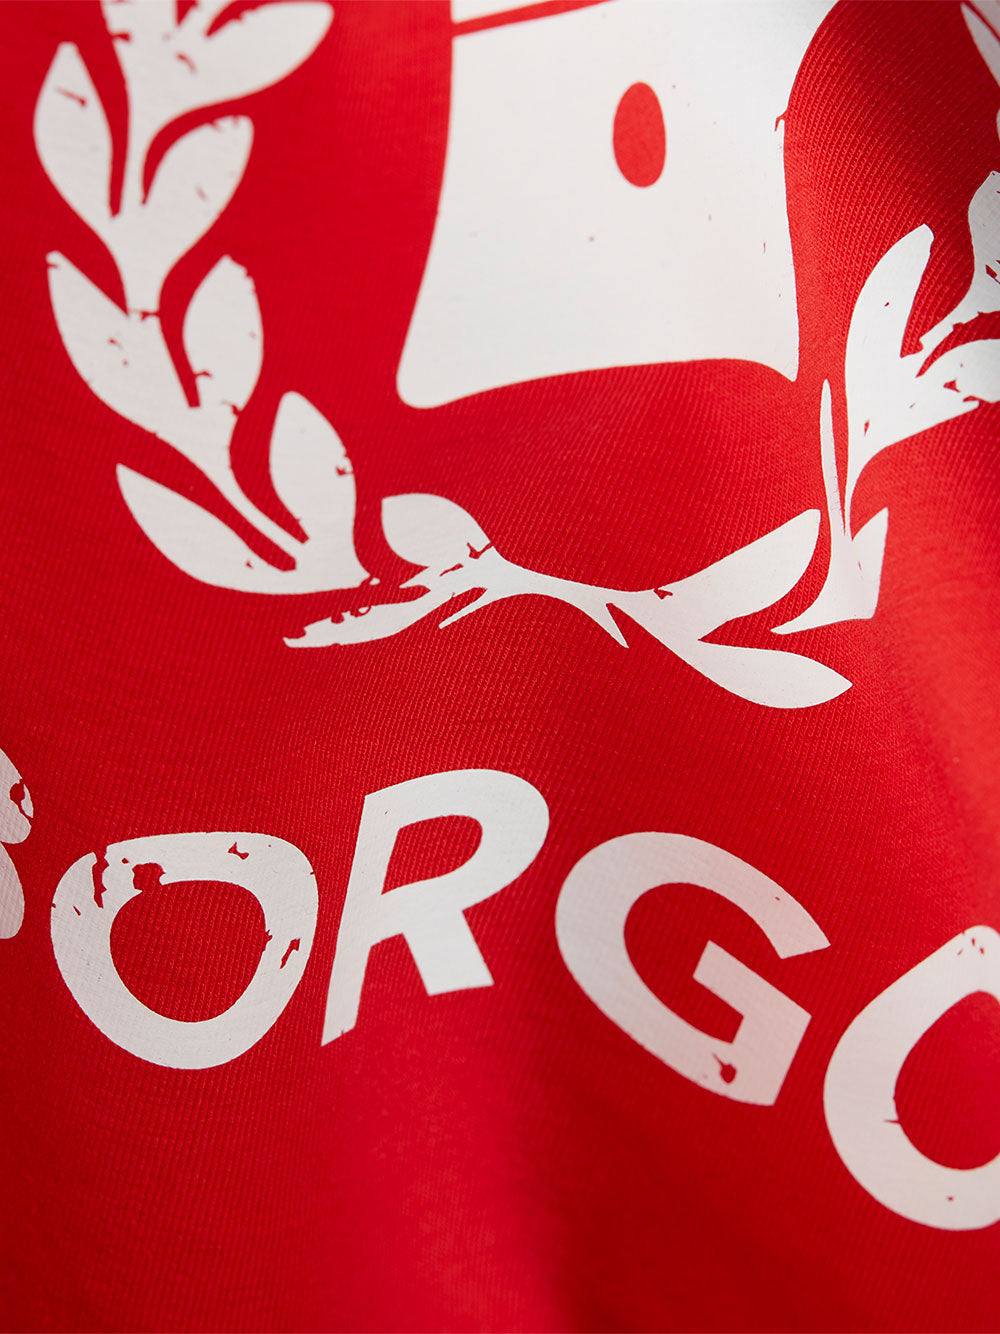 BORGO Siracusa Longlap Rosso T-Shirt